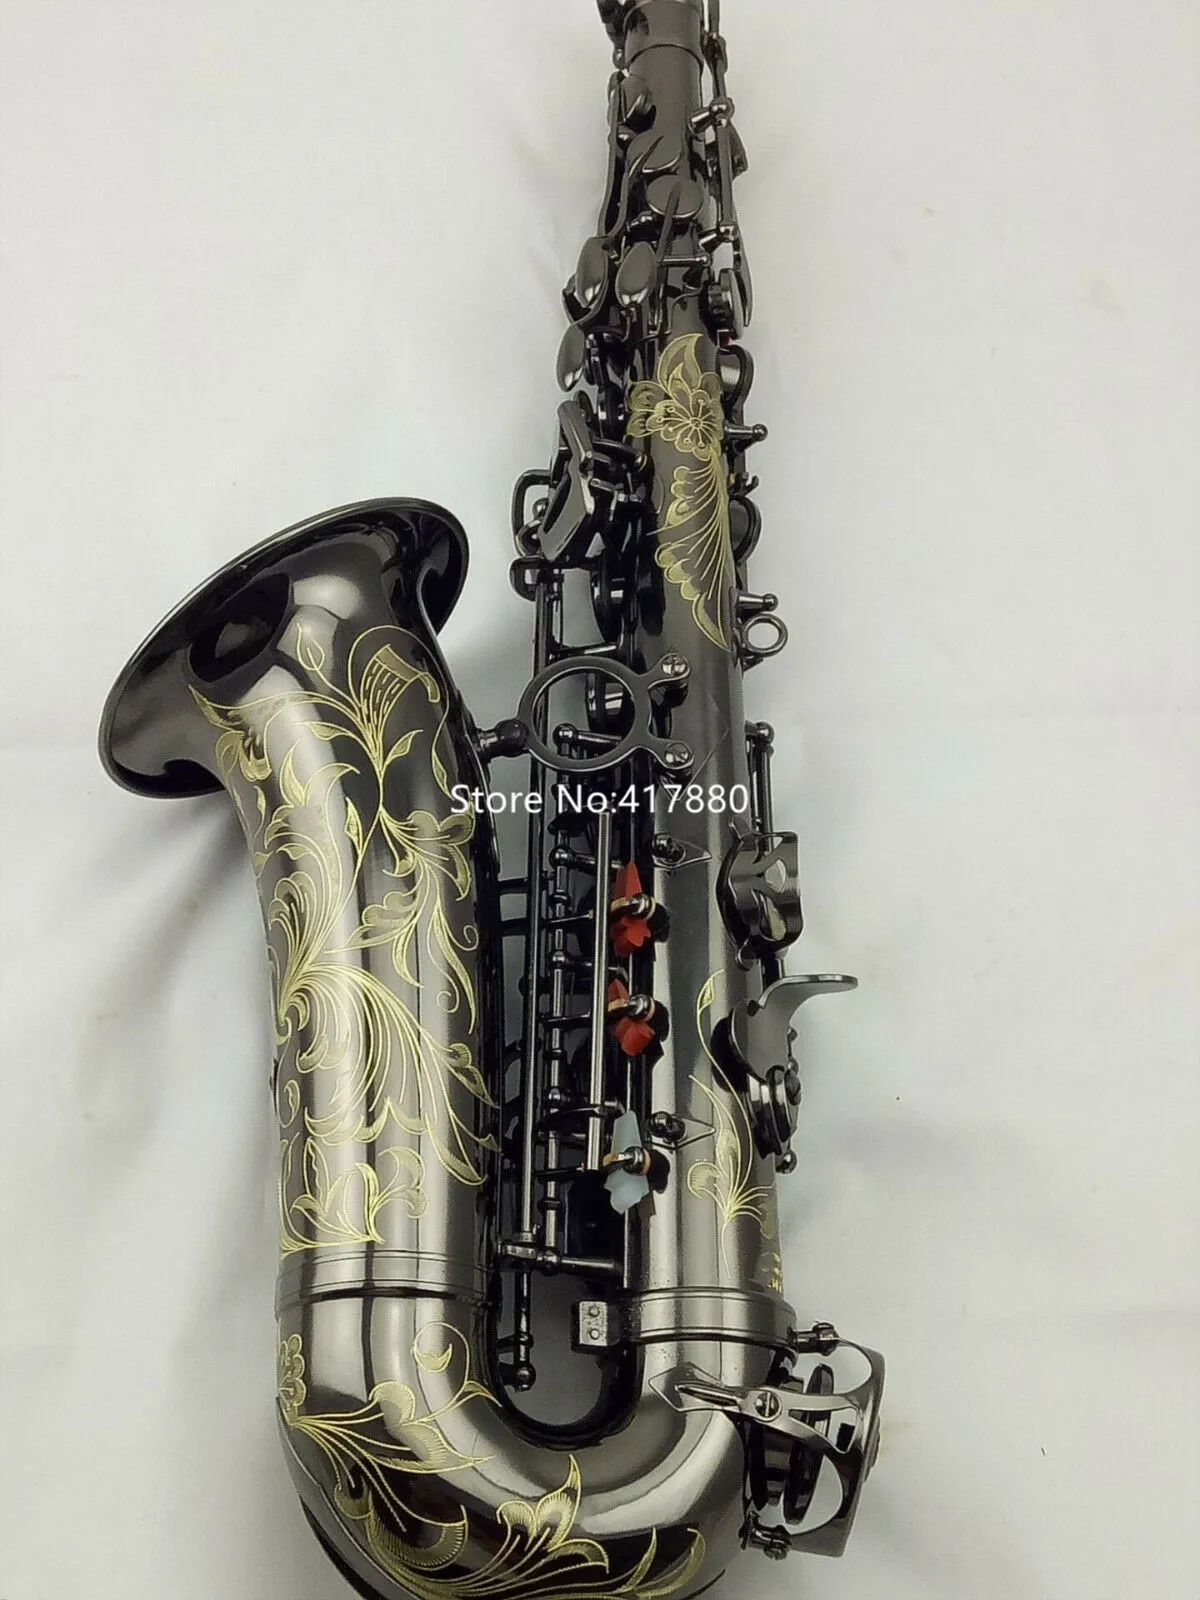 Högkvalitativ Eb Tune Alto Saxofone Glänsande svart nickelpläterad Professionellt musikinstrument med fodral Gratis frakt